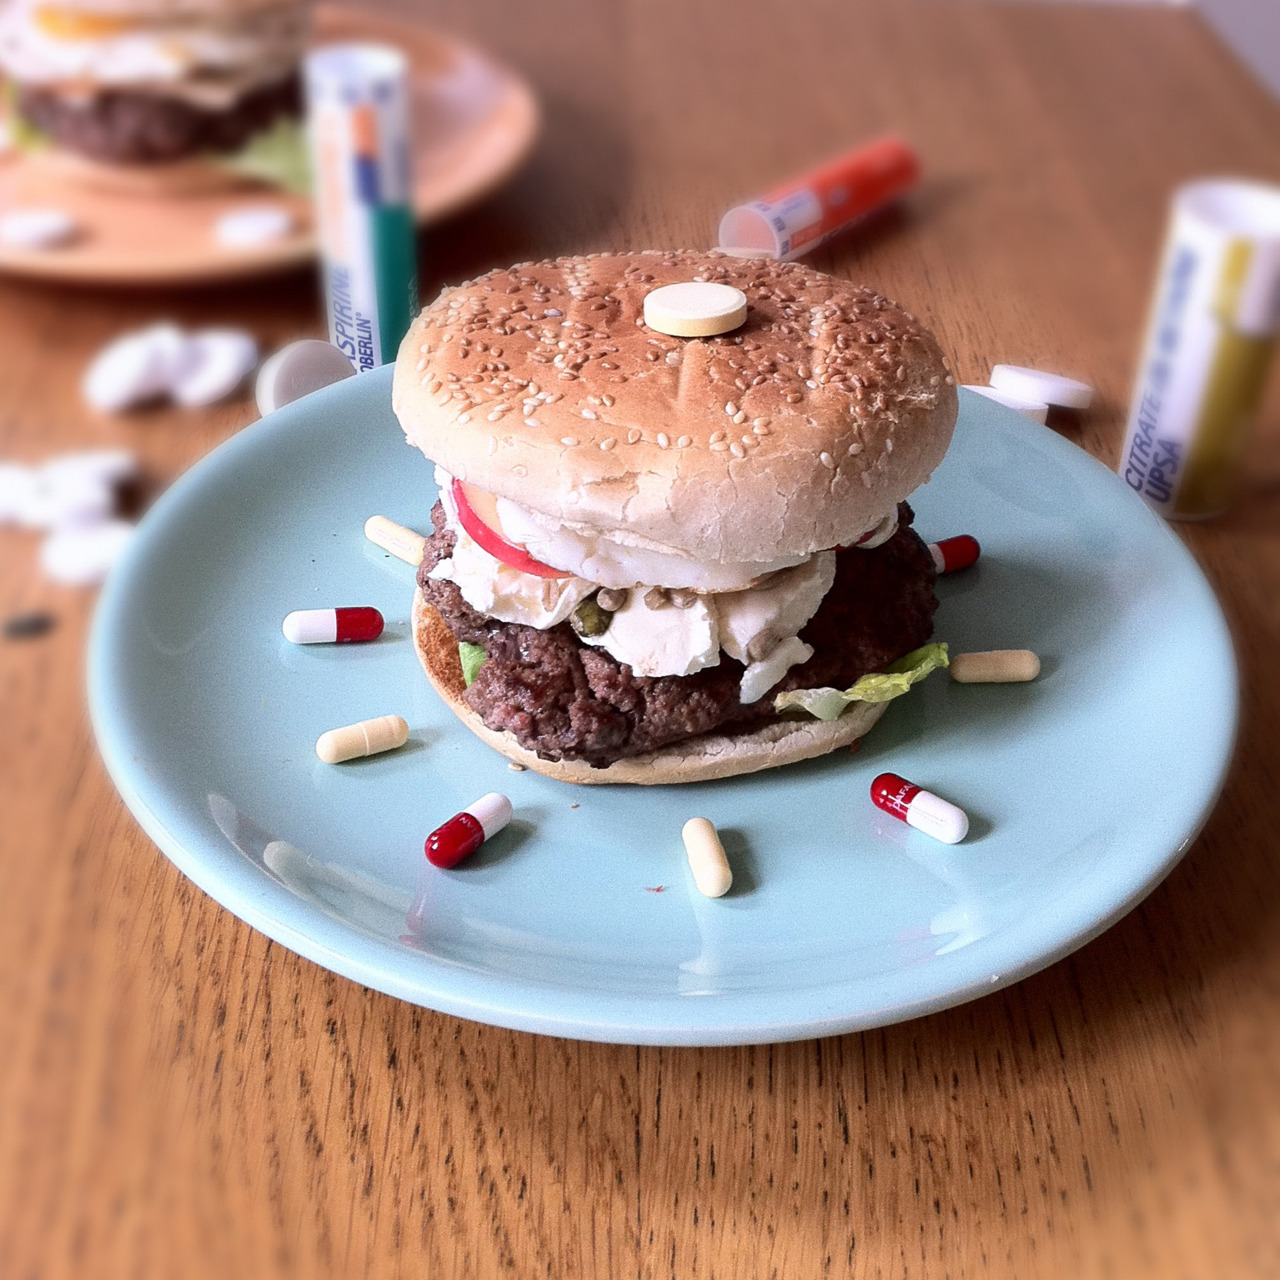 Docteur burger - Fat and furious